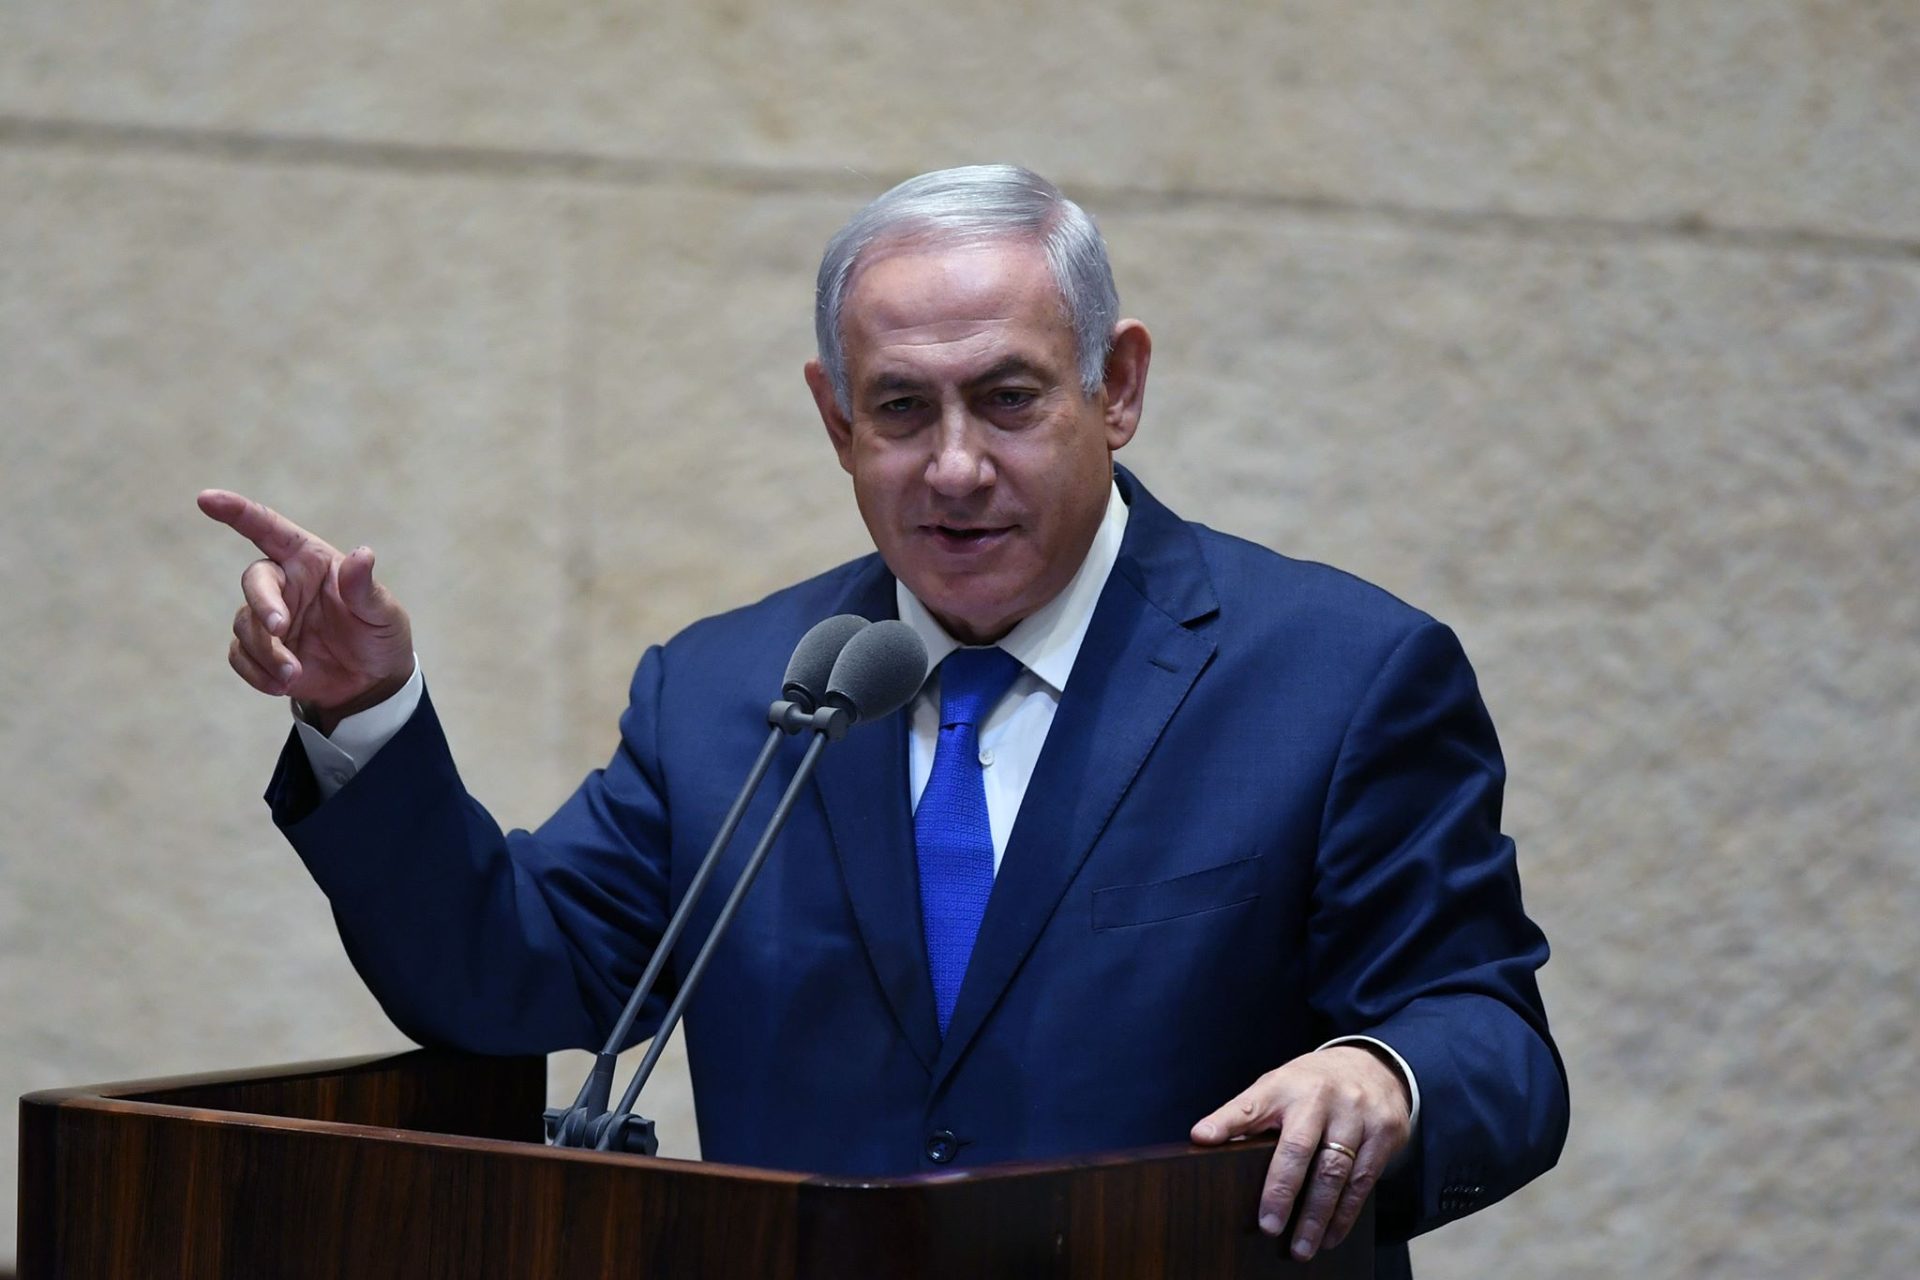 Netanyahu falha e Israel vai ter novas eleições